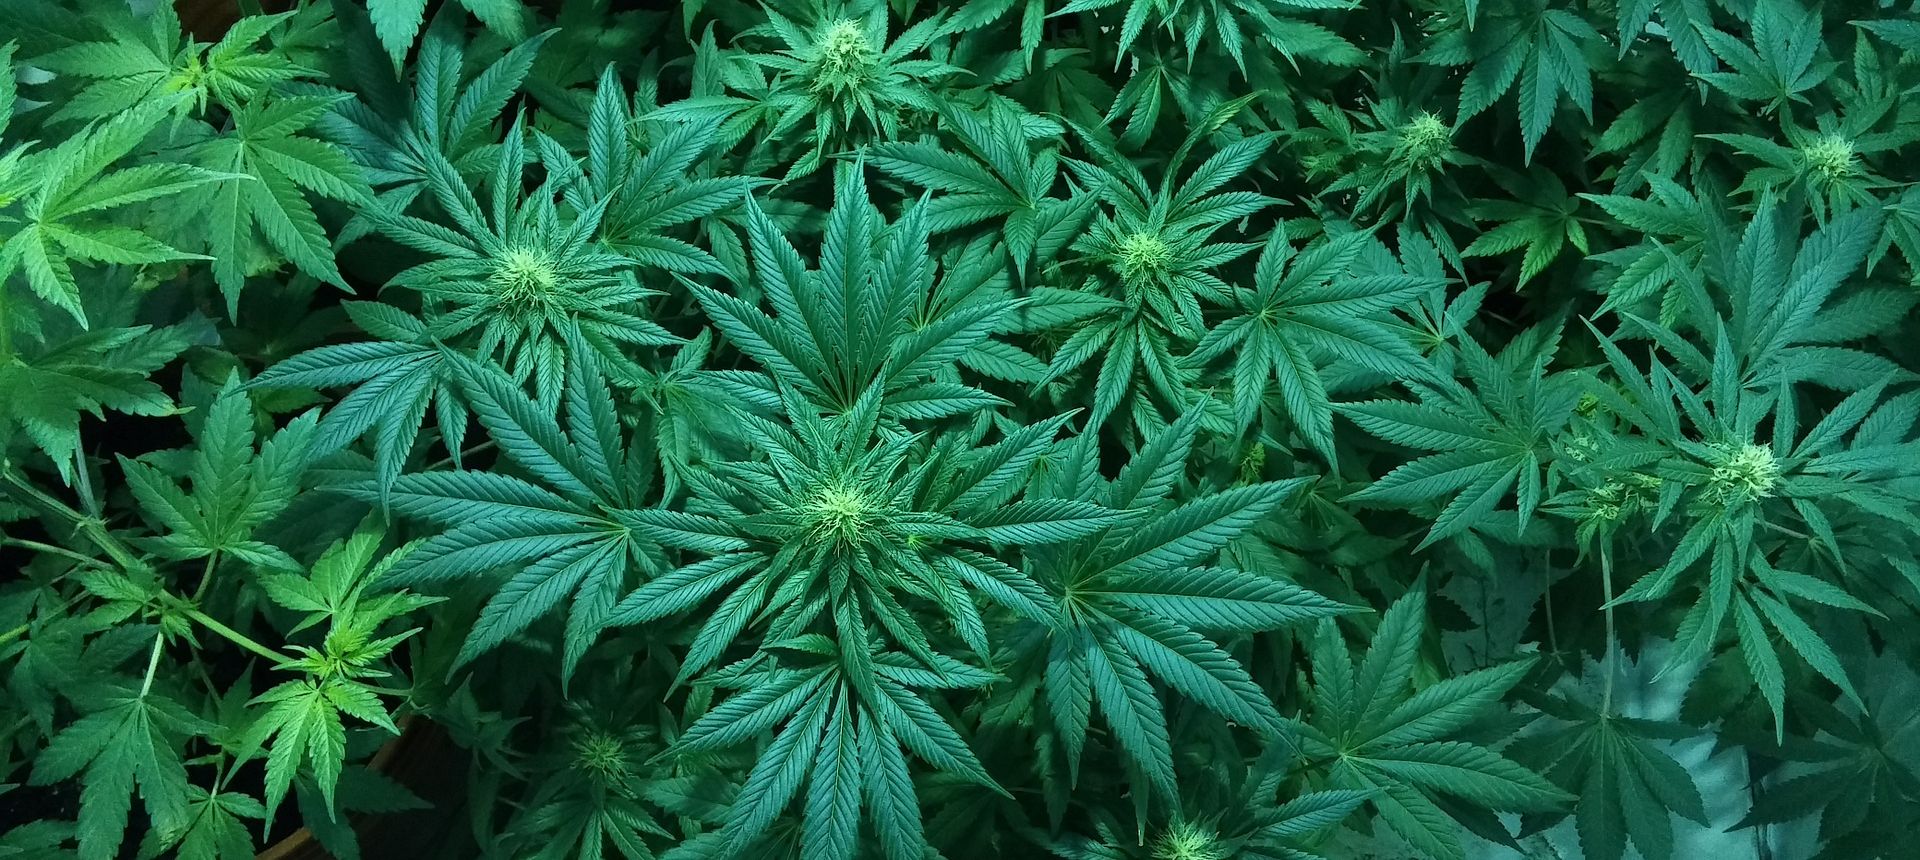 Kod 75-godišnjaka pronađeno pola kilograma marihuane